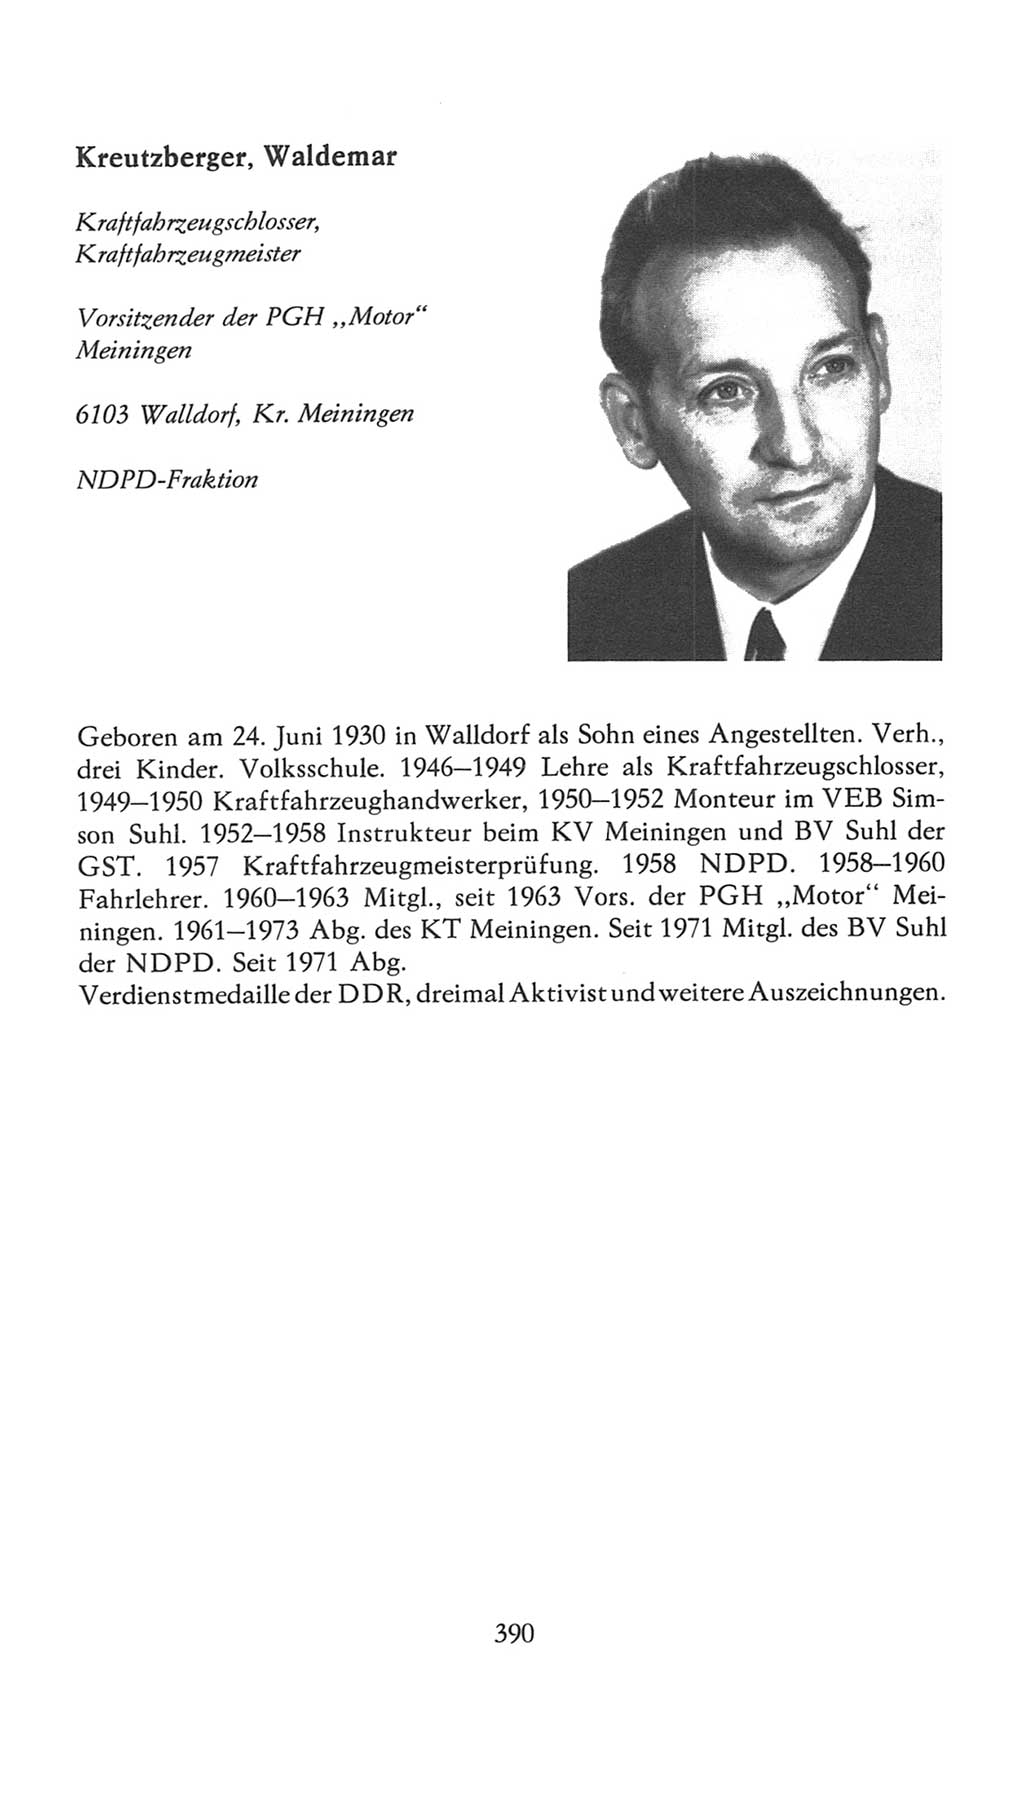 Volkskammer (VK) der Deutschen Demokratischen Republik (DDR), 7. Wahlperiode 1976-1981, Seite 390 (VK. DDR 7. WP. 1976-1981, S. 390)